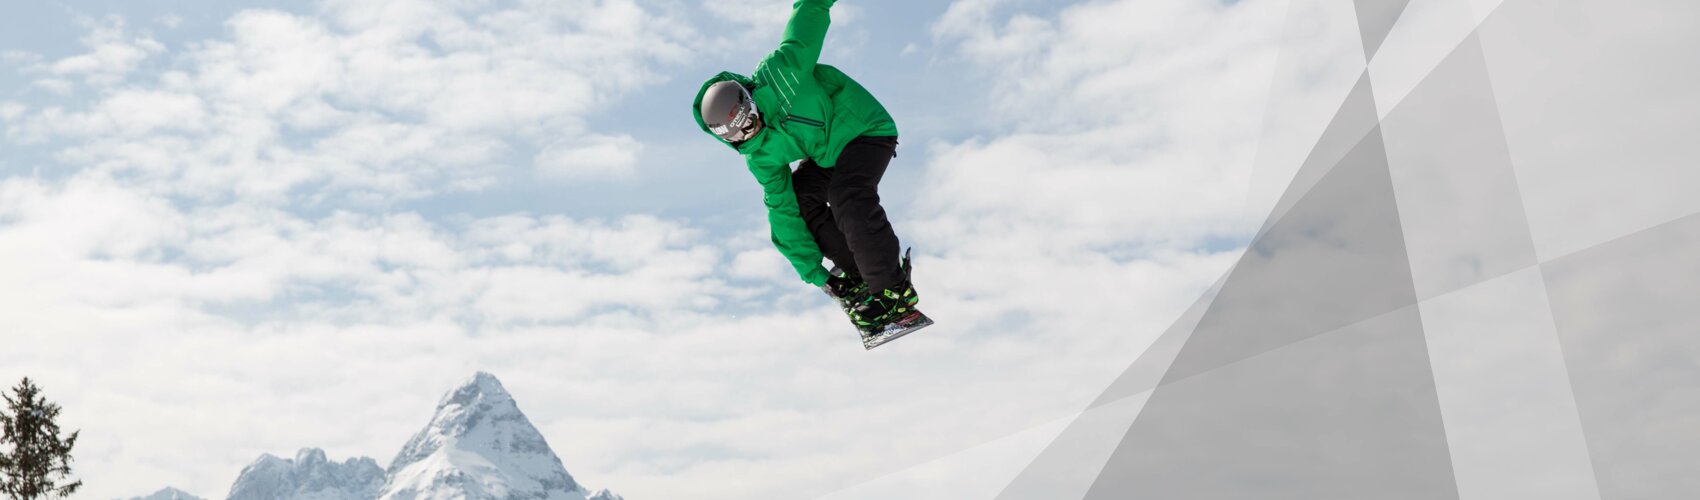 Snowboarder in Pipe | © Tiroler Zugspitz Arena | Wettersteinbahnen